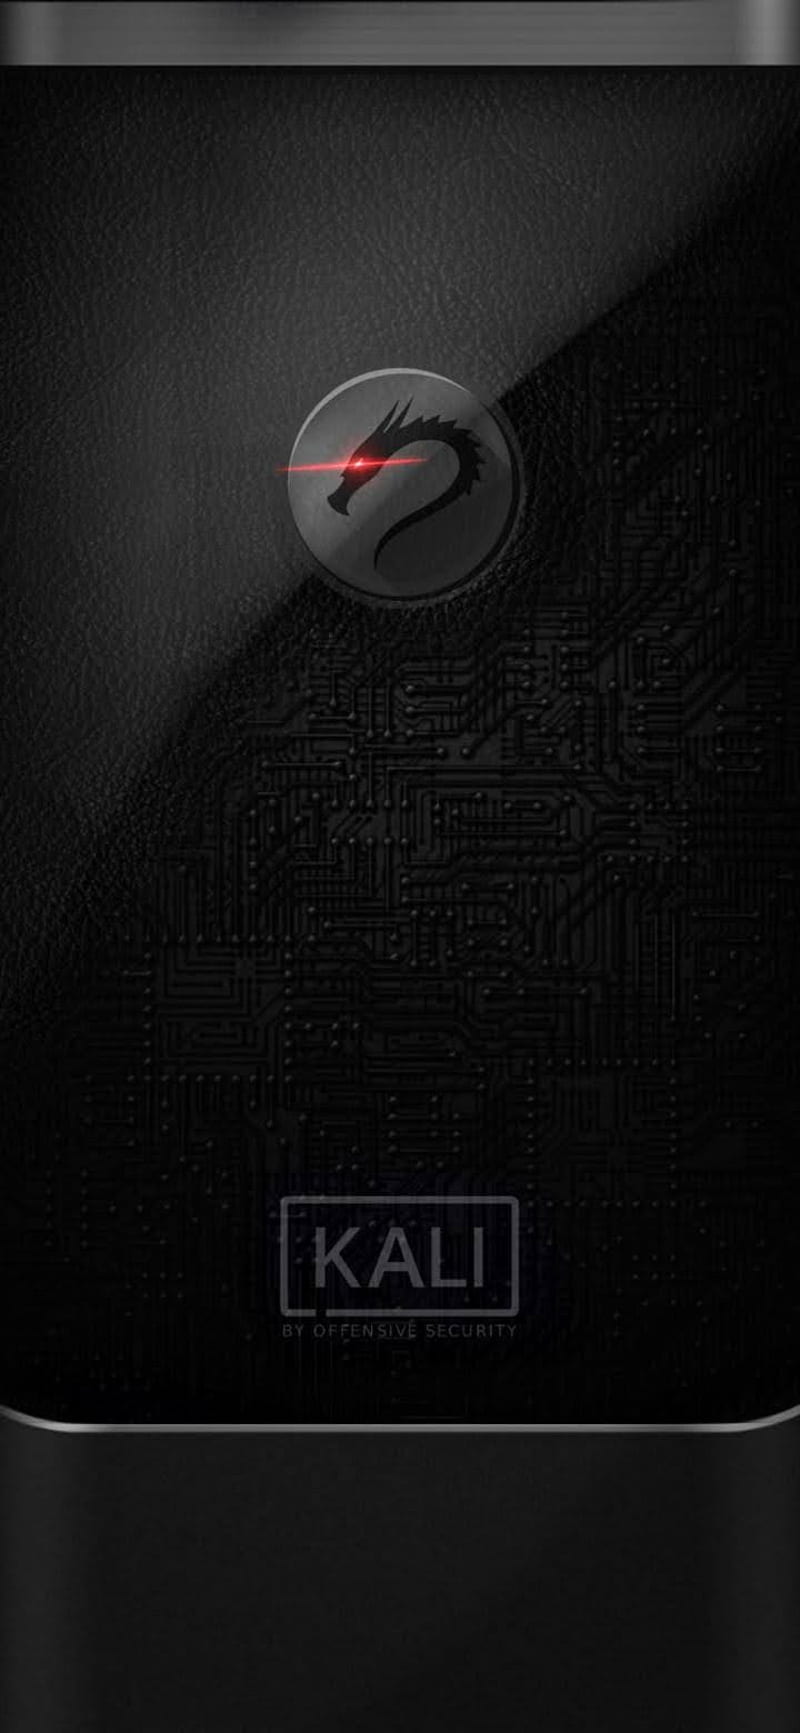 Linux Kali Hd Mobile Wallpaper Peakpx